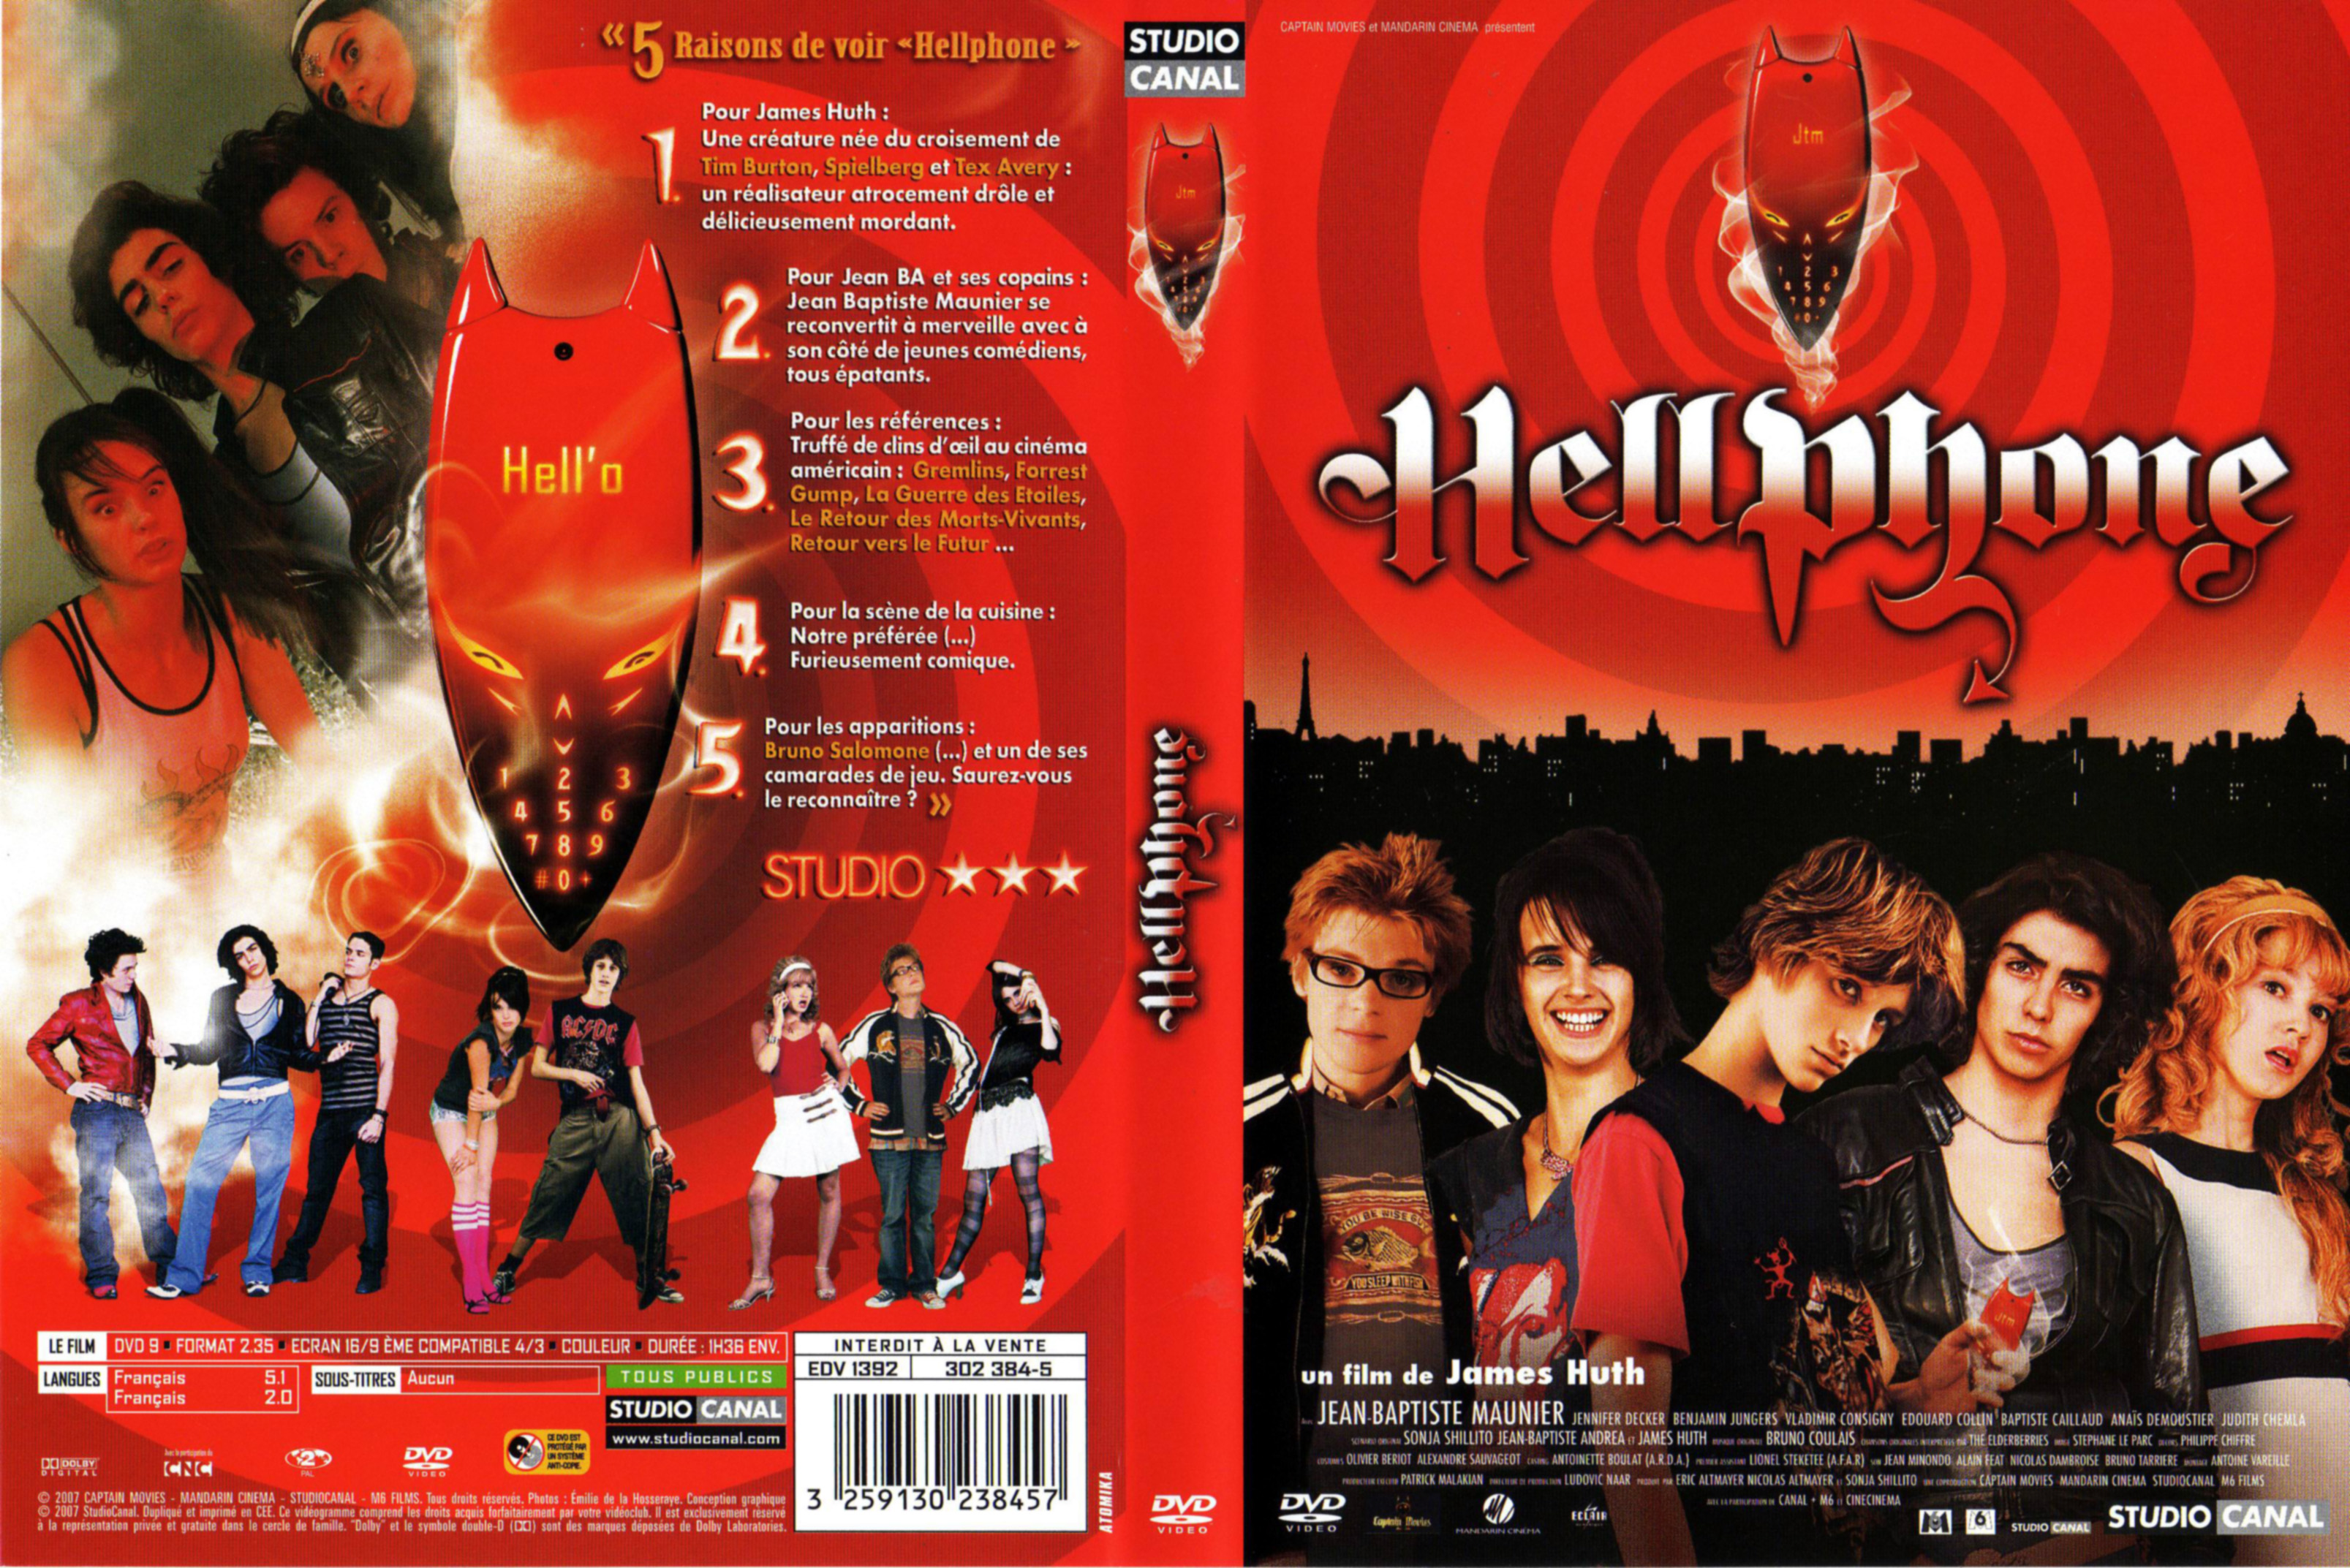 Jaquette DVD Hellphone